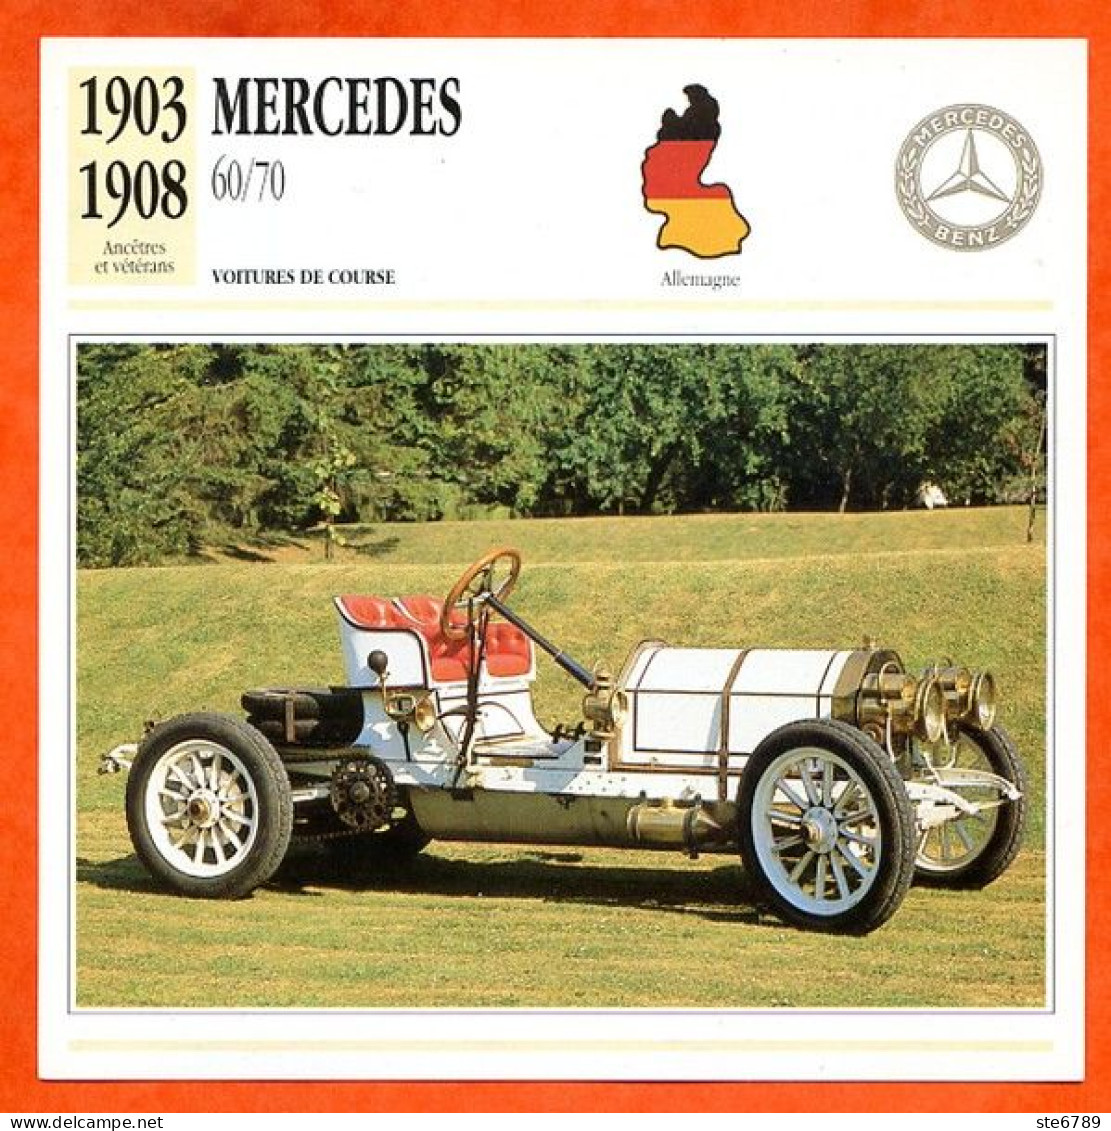 MERCEDES 60/70 1903 Voiture De Course Allemagne Fiche Technique Automobile - Autos